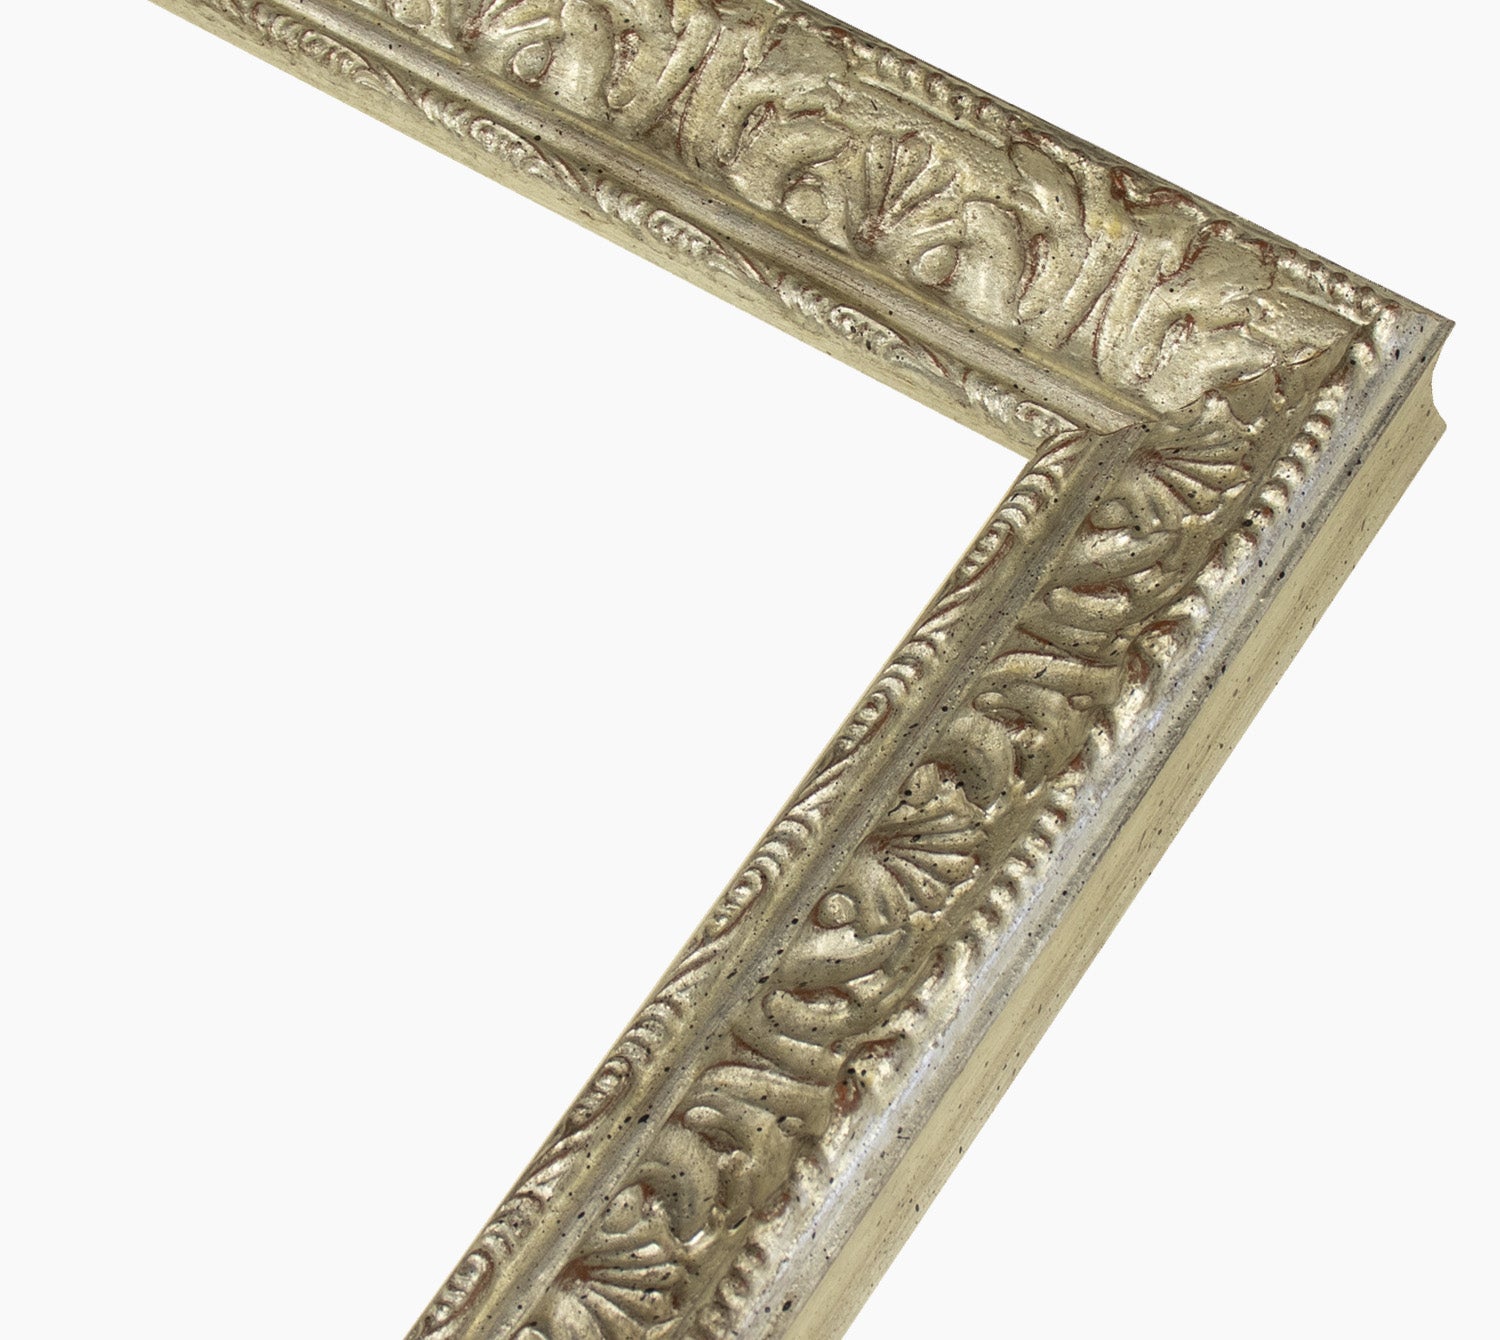 396.011 cadre en bois à la feuille d'argent mesure de profil 45x35 mm Lombarda cornici S.n.c.